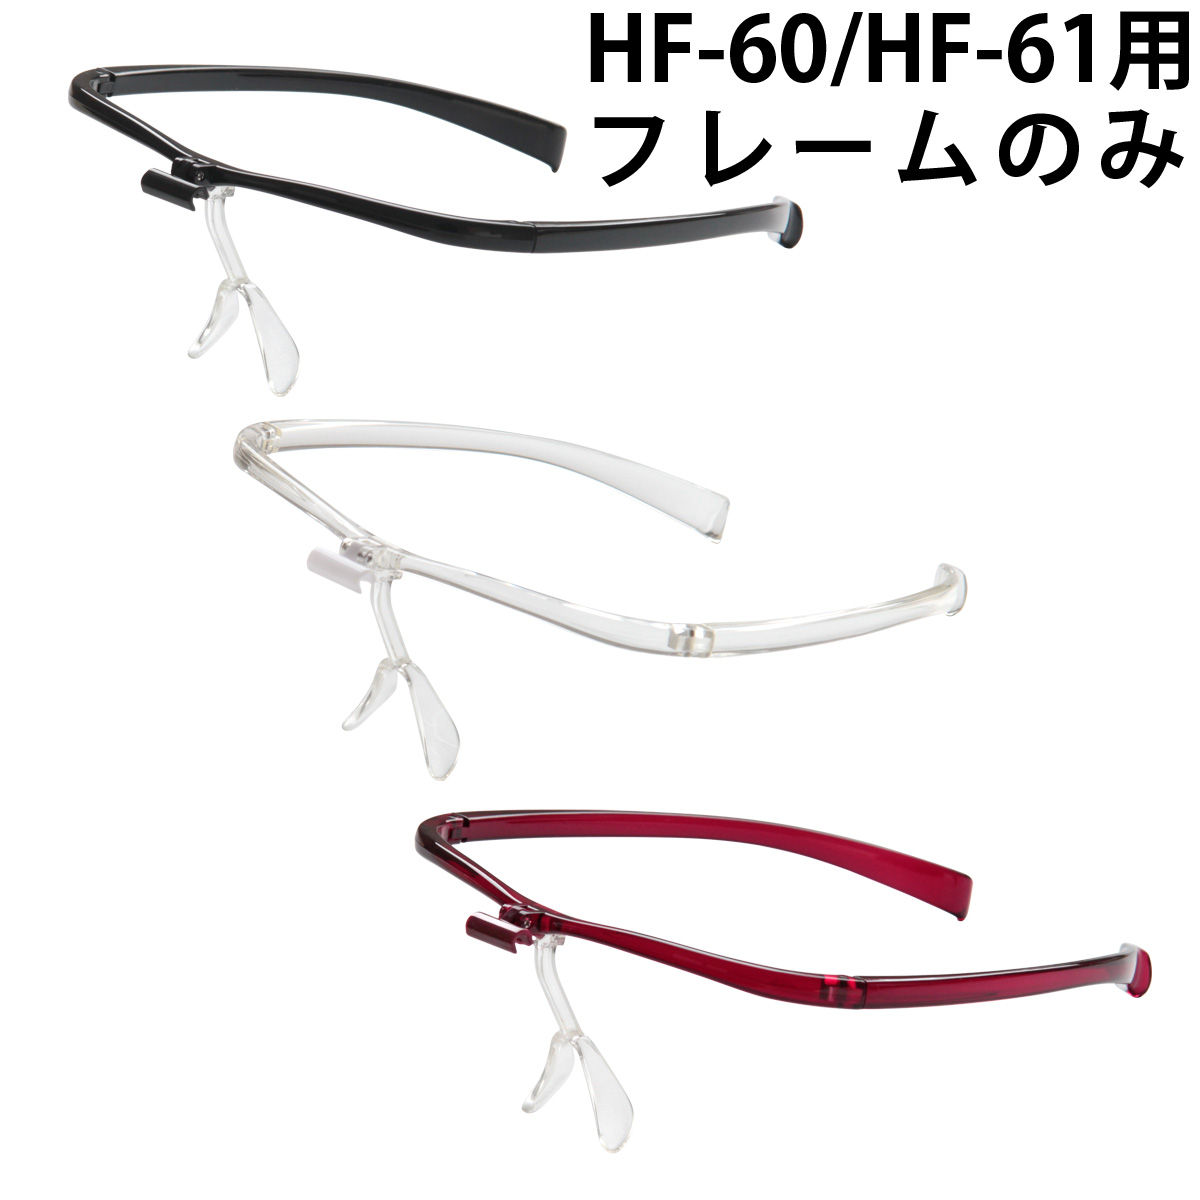 双眼メガネルーペ メガネタイプ HF-60 HF-61用 フレームのみ パーツ 単品